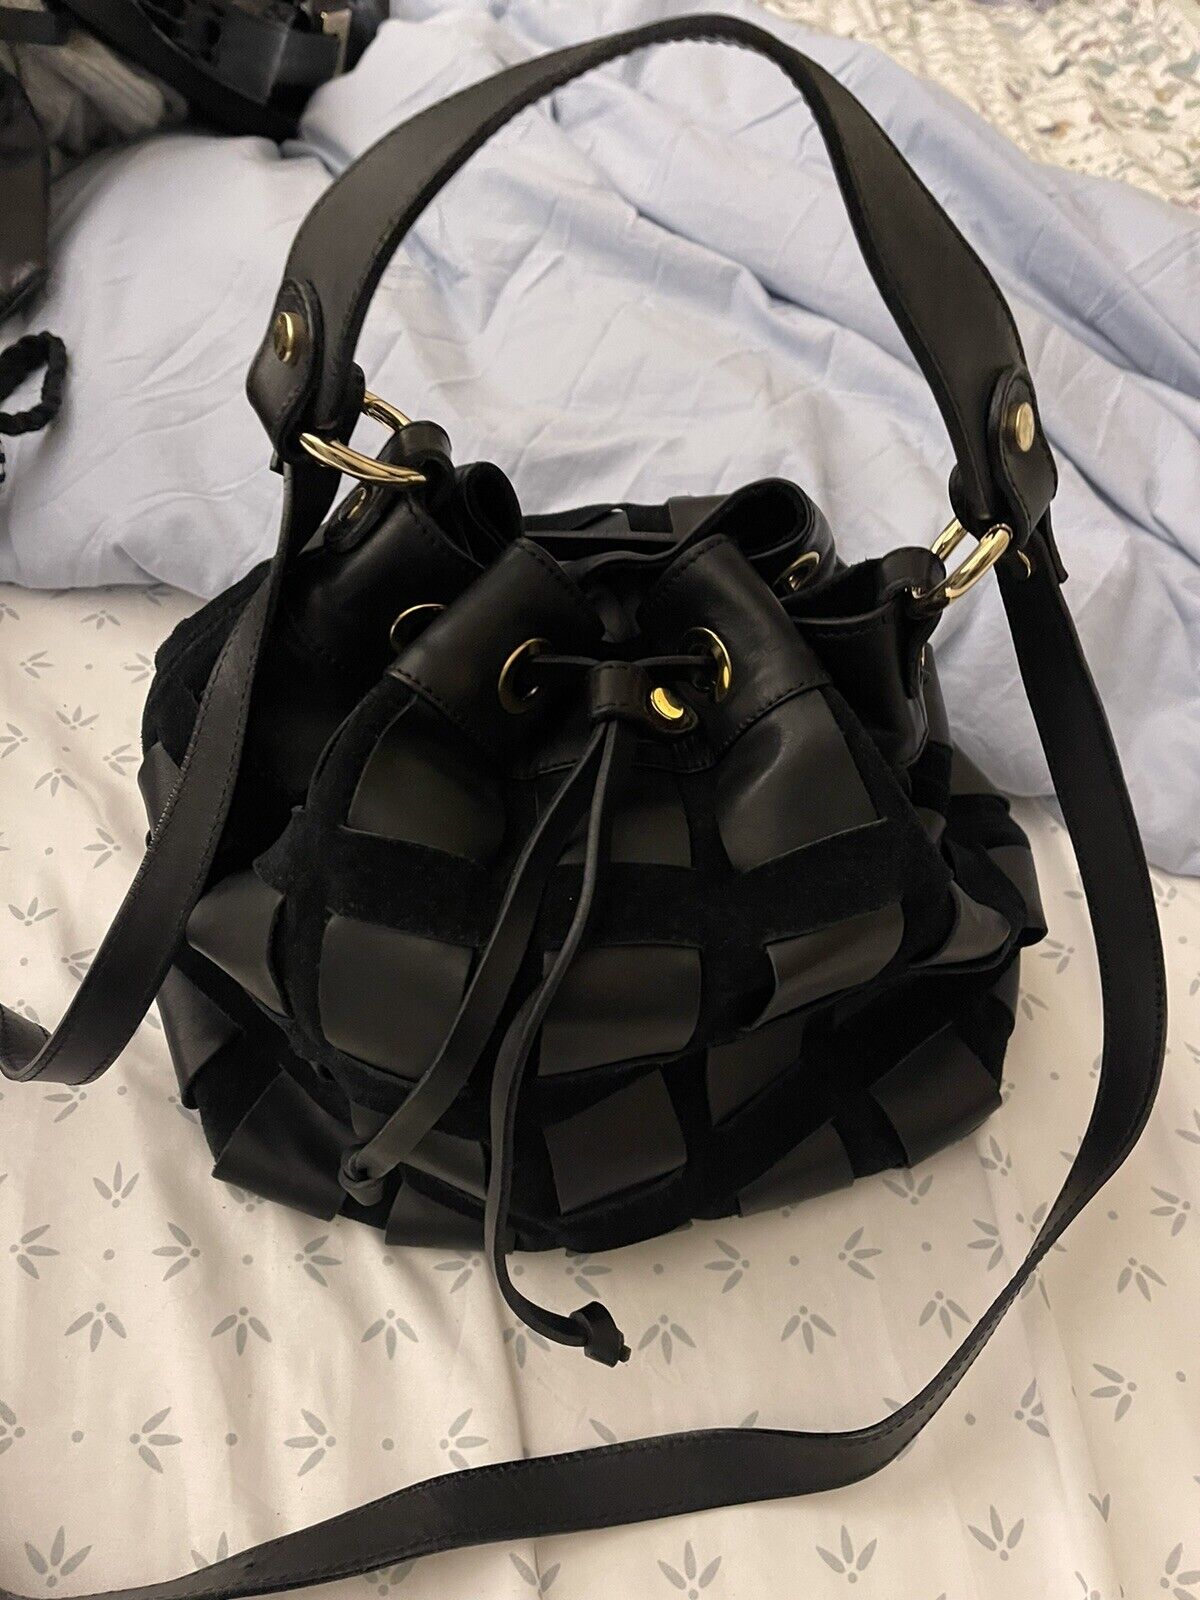 Nardelli purse black & gold bag - image 1